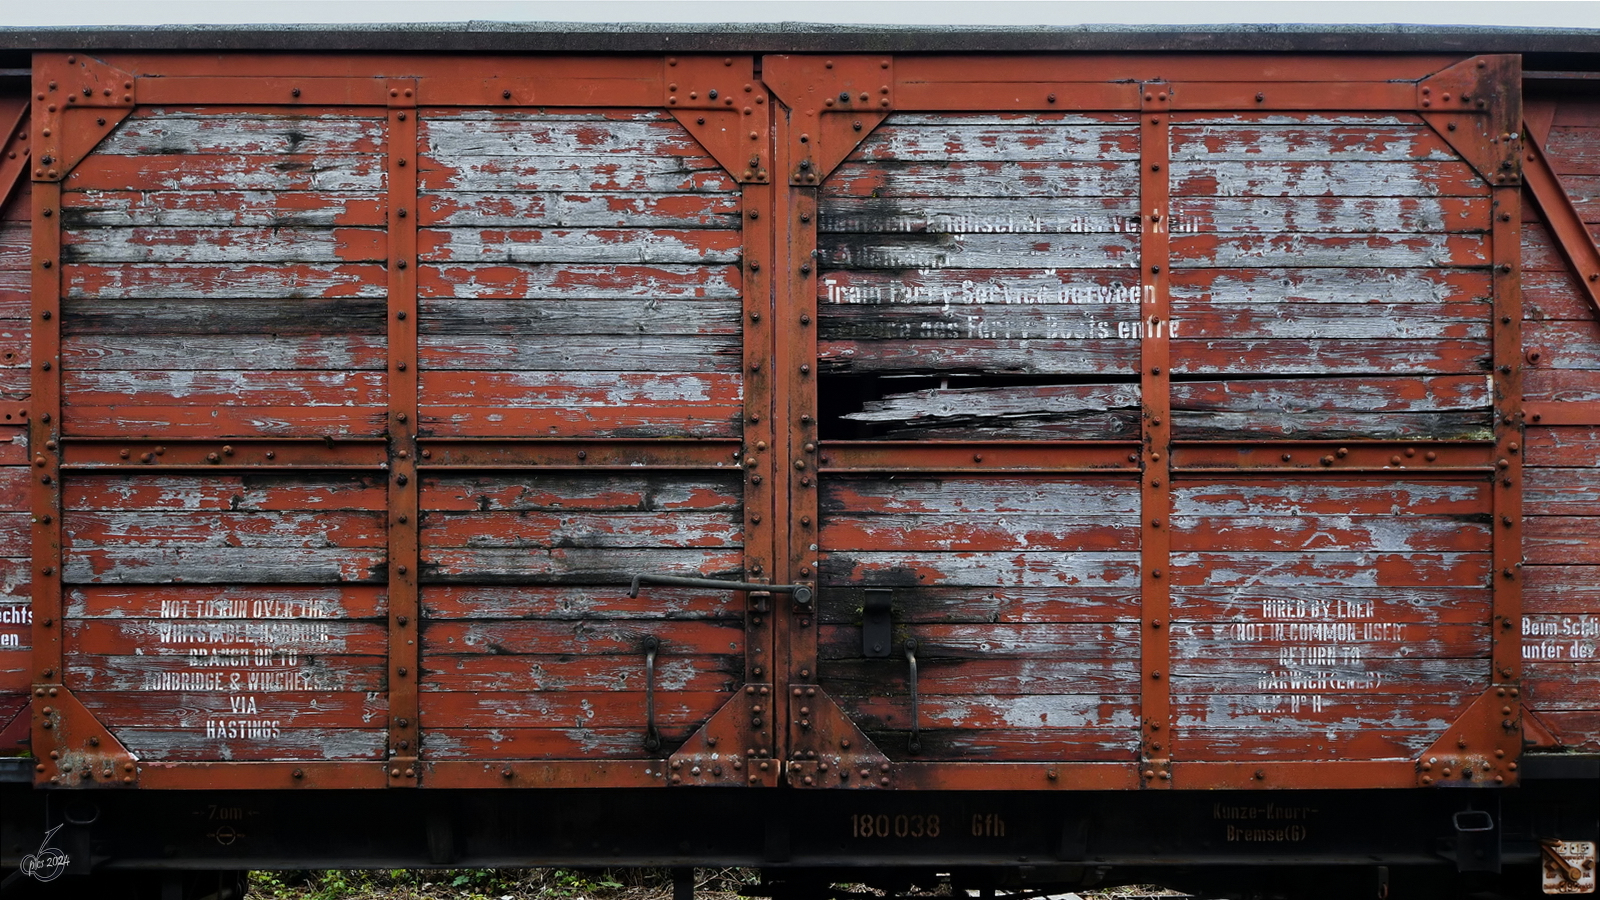 Im Bild die teilweise in englischer Sprache beschrifteten Schiebetüren eines ausgedienten Güterwagens (Gfh, 180 038), so gesehen im April 2024 auf dem Freigelände des Eisenbahnmuseums in Bochum.